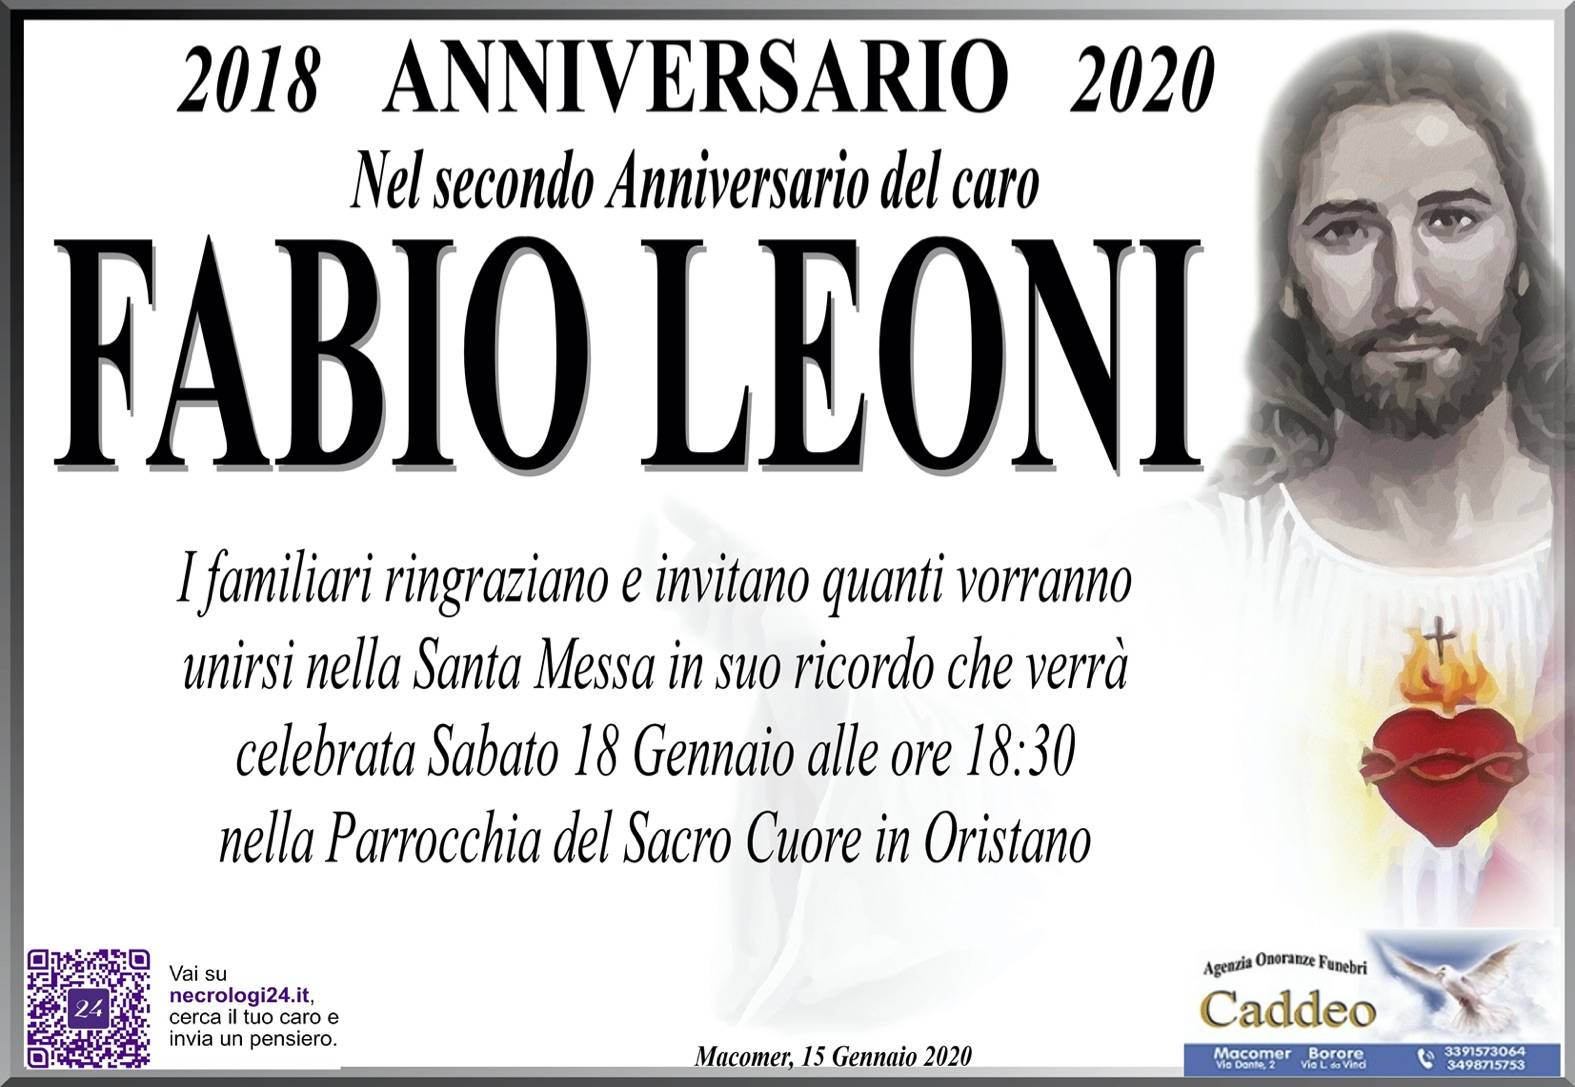 Fabio Leoni